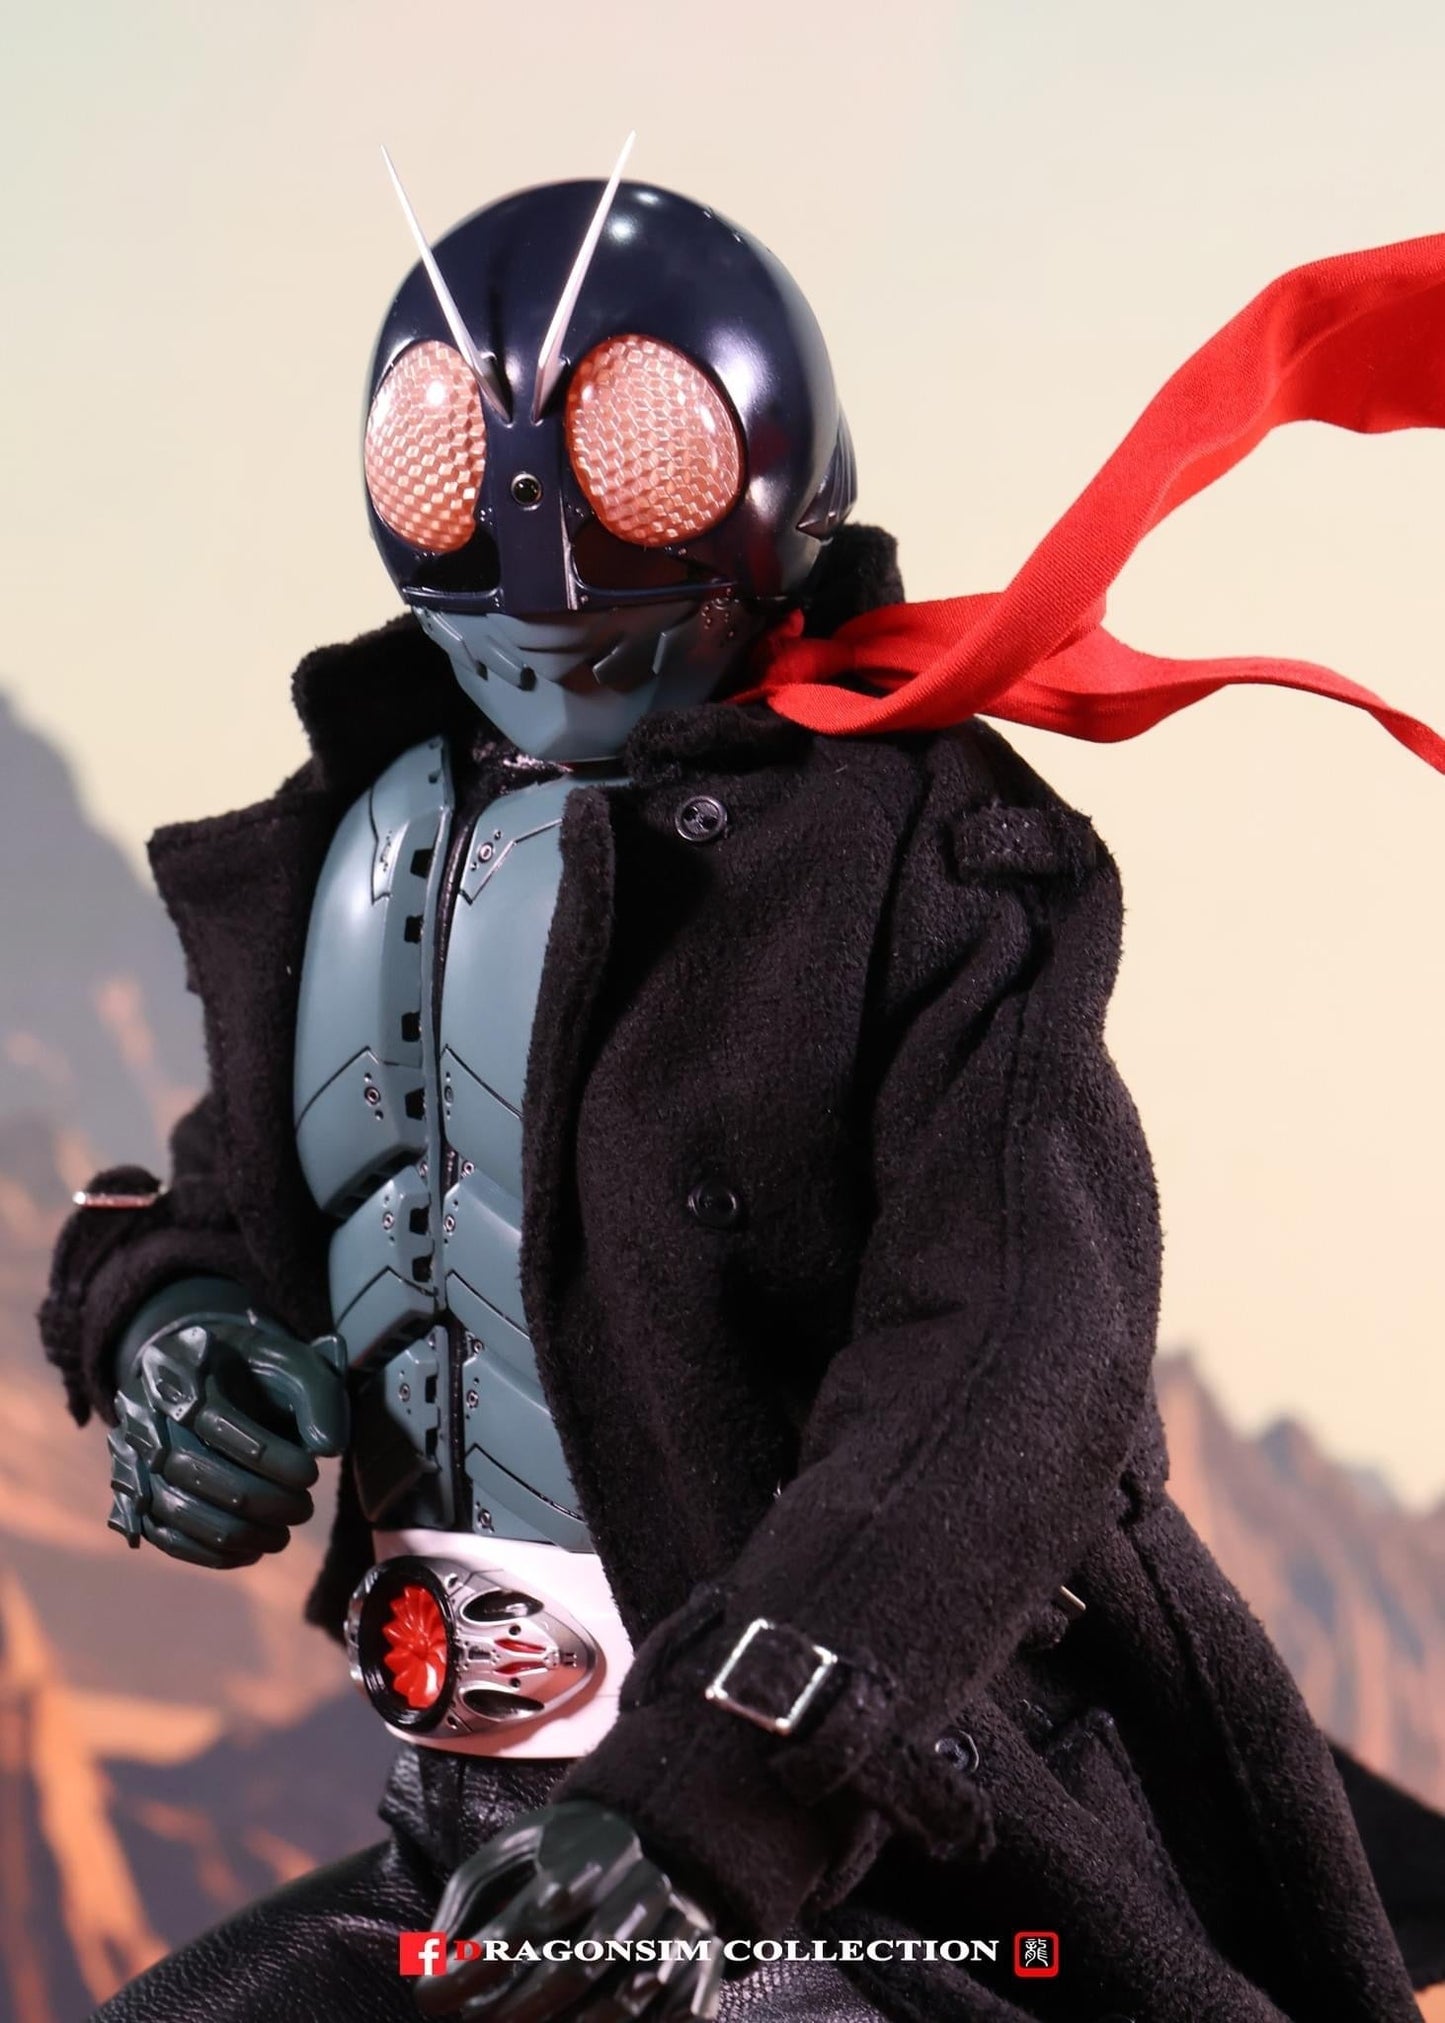 Pedido Figura Masked Rider No. 1 - Shin Masked Rider - FigZero marca Threezero 3Z0487 escala 1/6